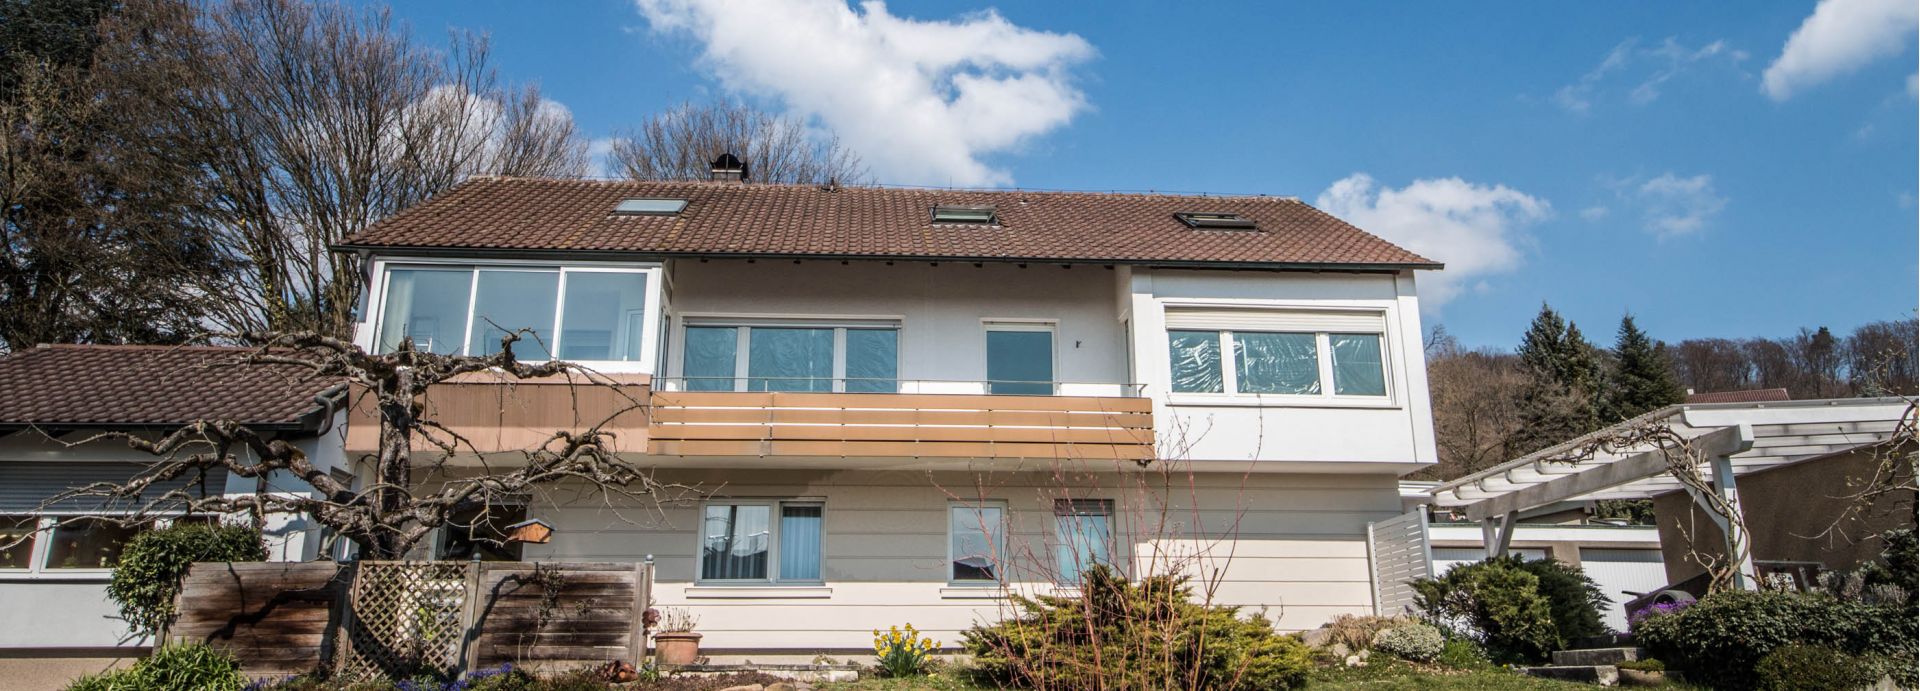 Vermietet: Traumhafte 4 Zimmer-Wohnung in Ebersbach, Göppingen